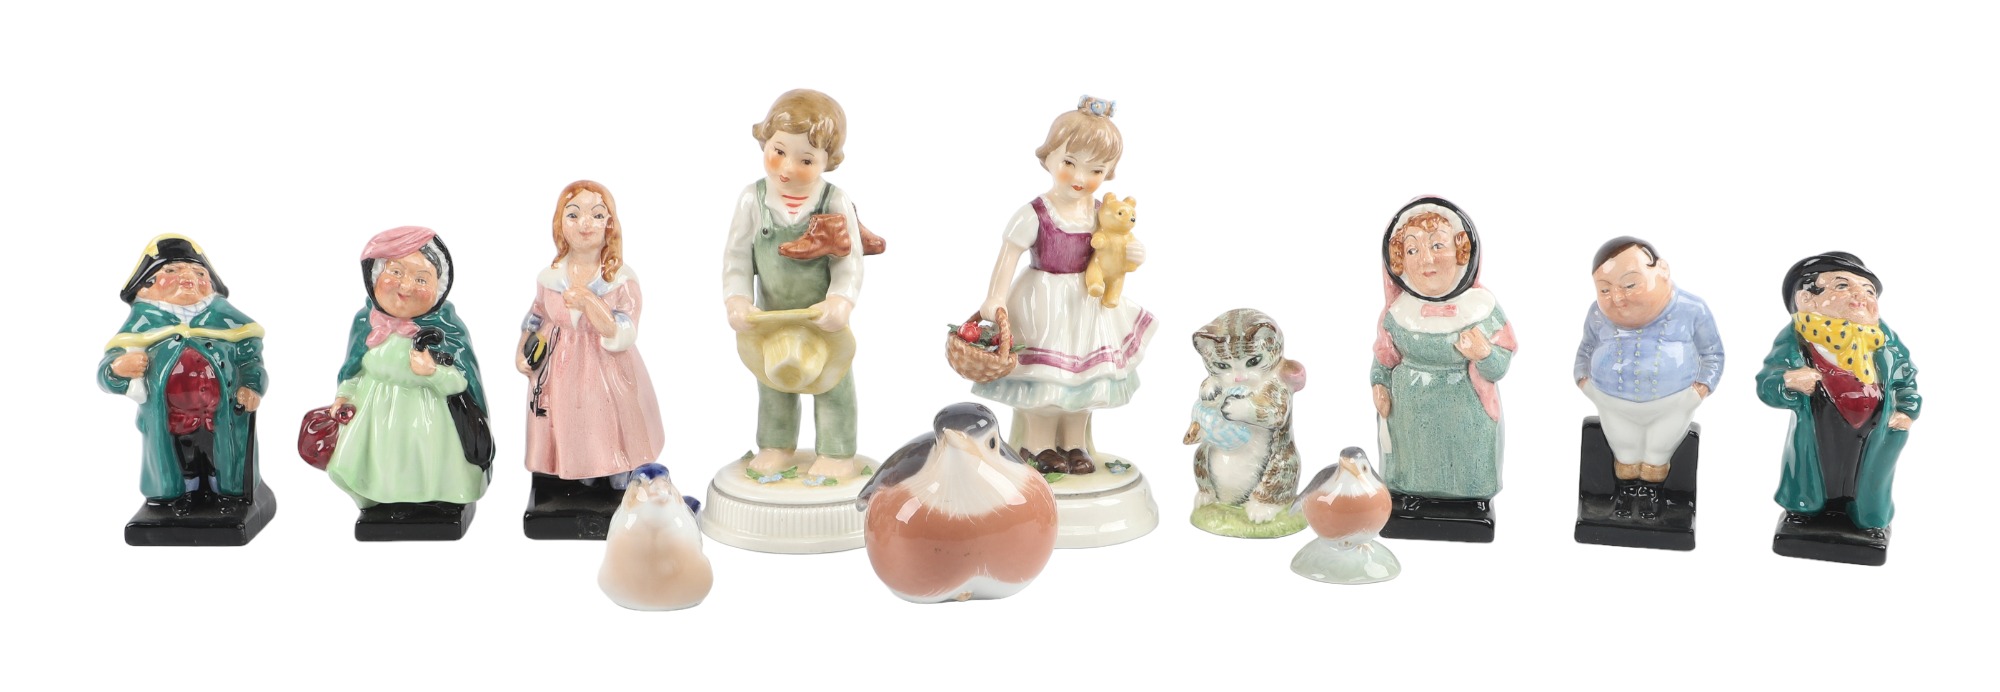  6 Royal Doulton porcelain figurines  3ca629